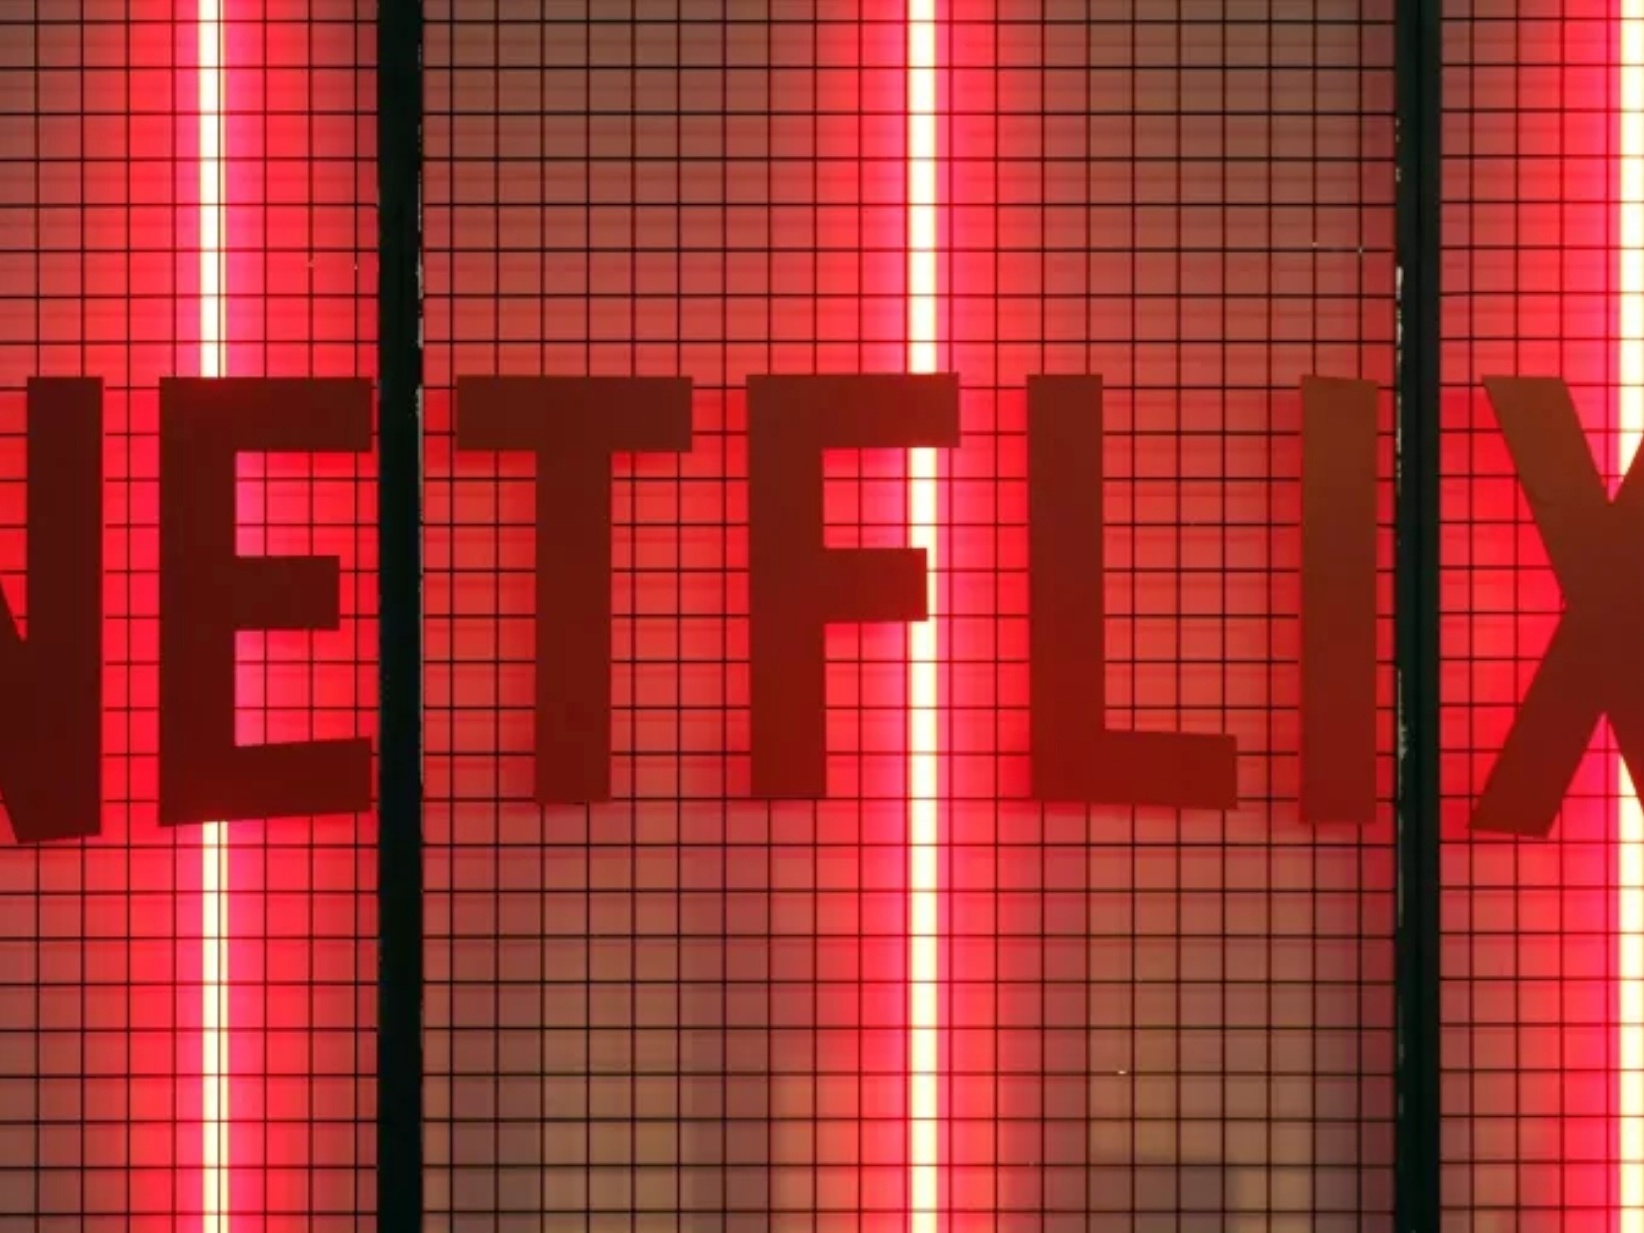 Netflix dará 40 jogos de graça para seus assinantes em 2023